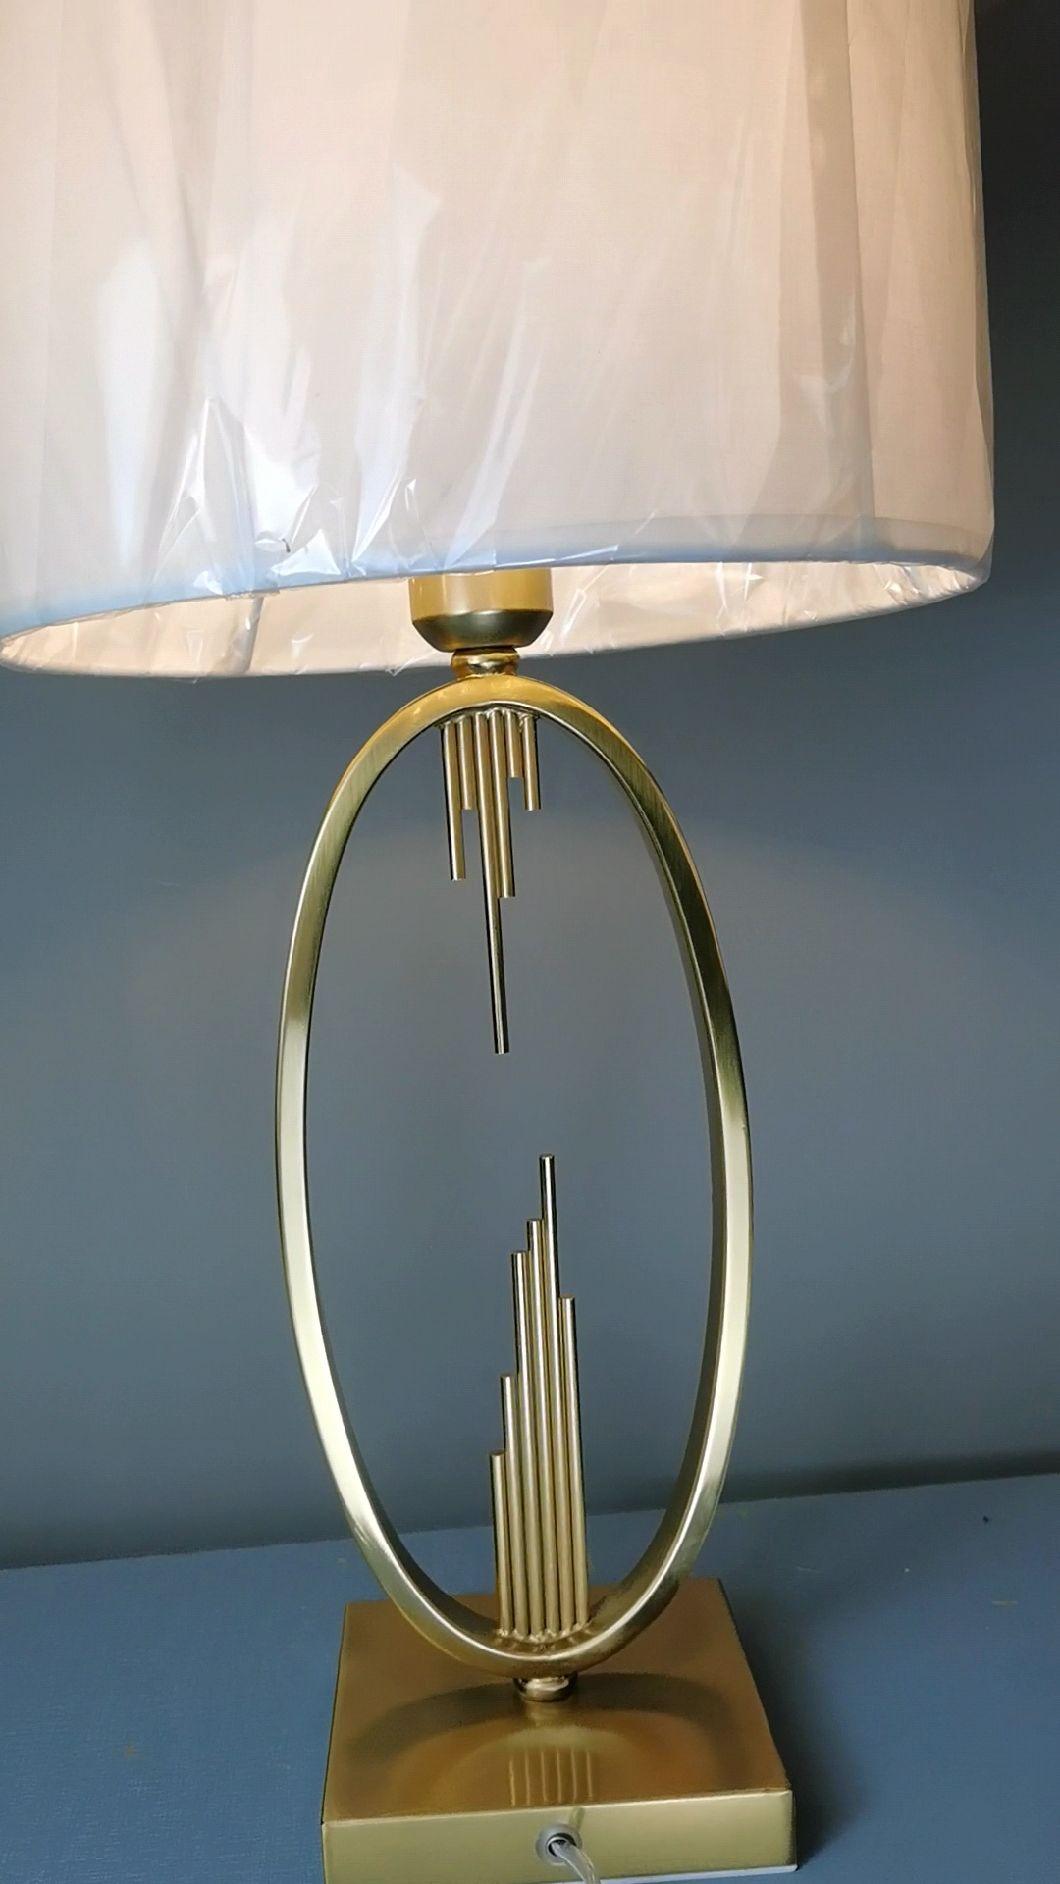 Postmodern Light Luxury Table Lamp Living Room Model Room Bedroom Bedside Table Creative European Simple Minimalist Bedside Lamp